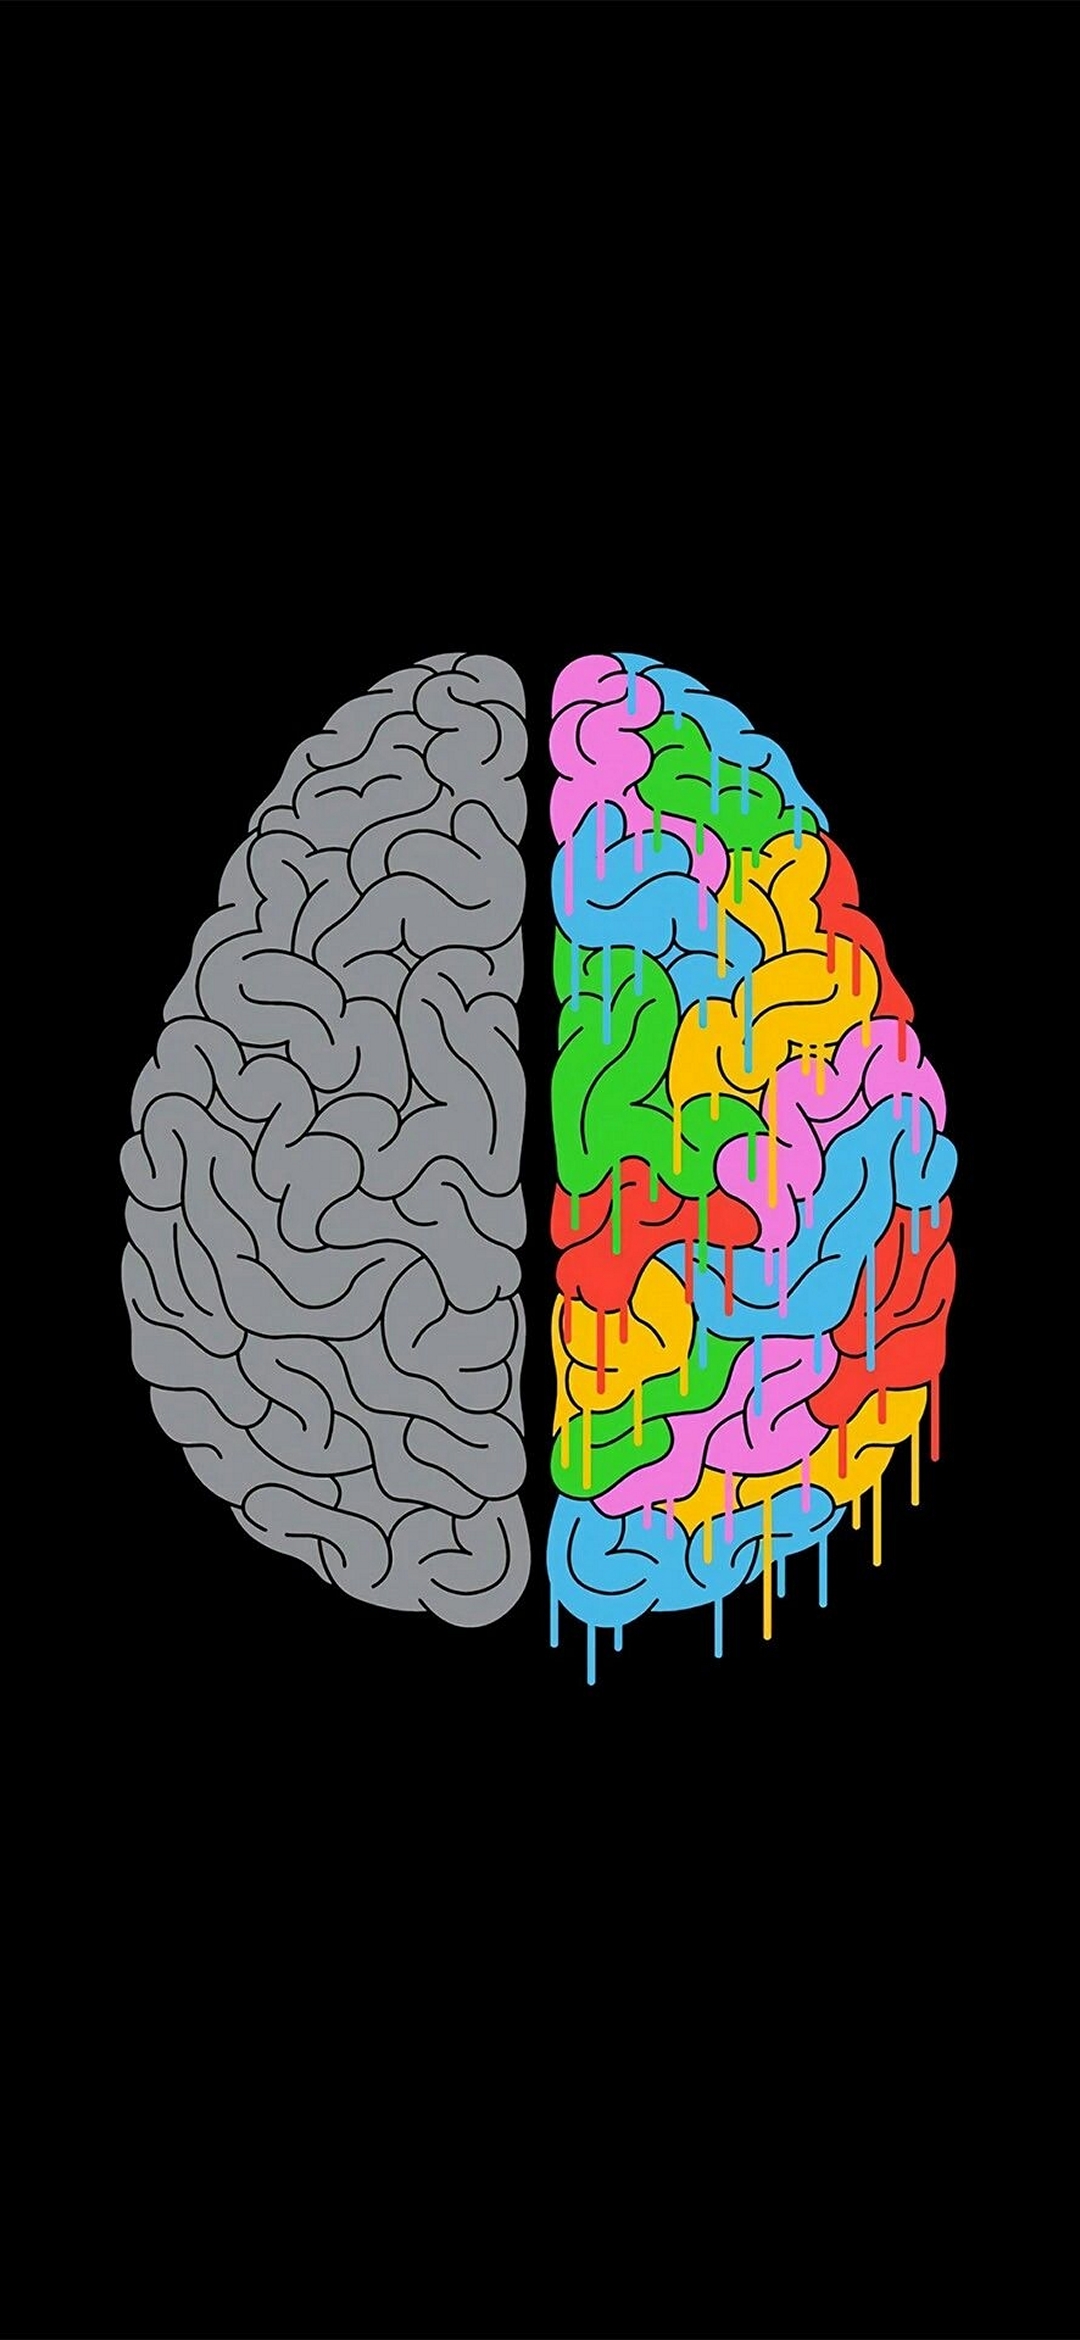 Телефон brain. Мозг Минимализм. Мозг заставка. Мозг арты. Мозги заставка.